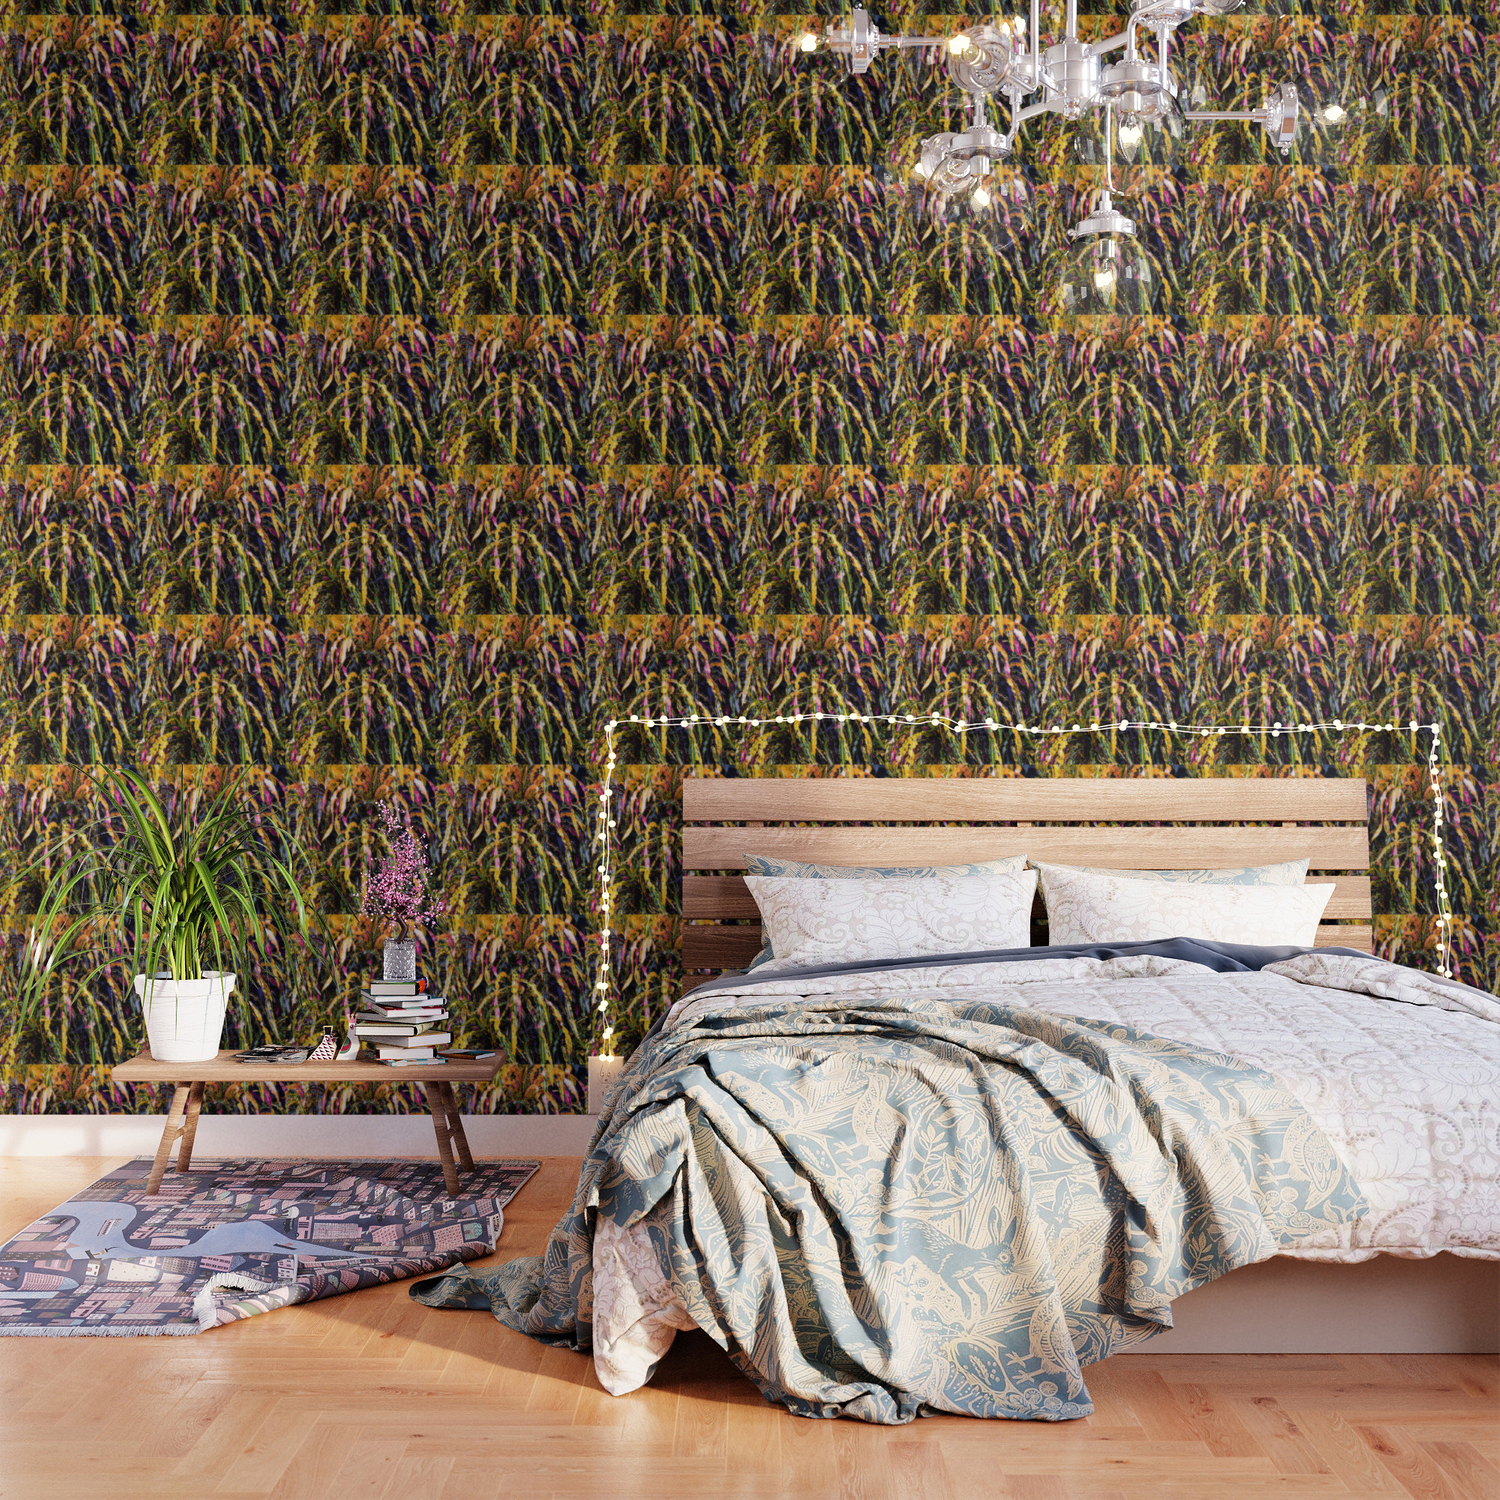 Sanfrancisco Croton Wallpaper By Terainbdesigns Society6